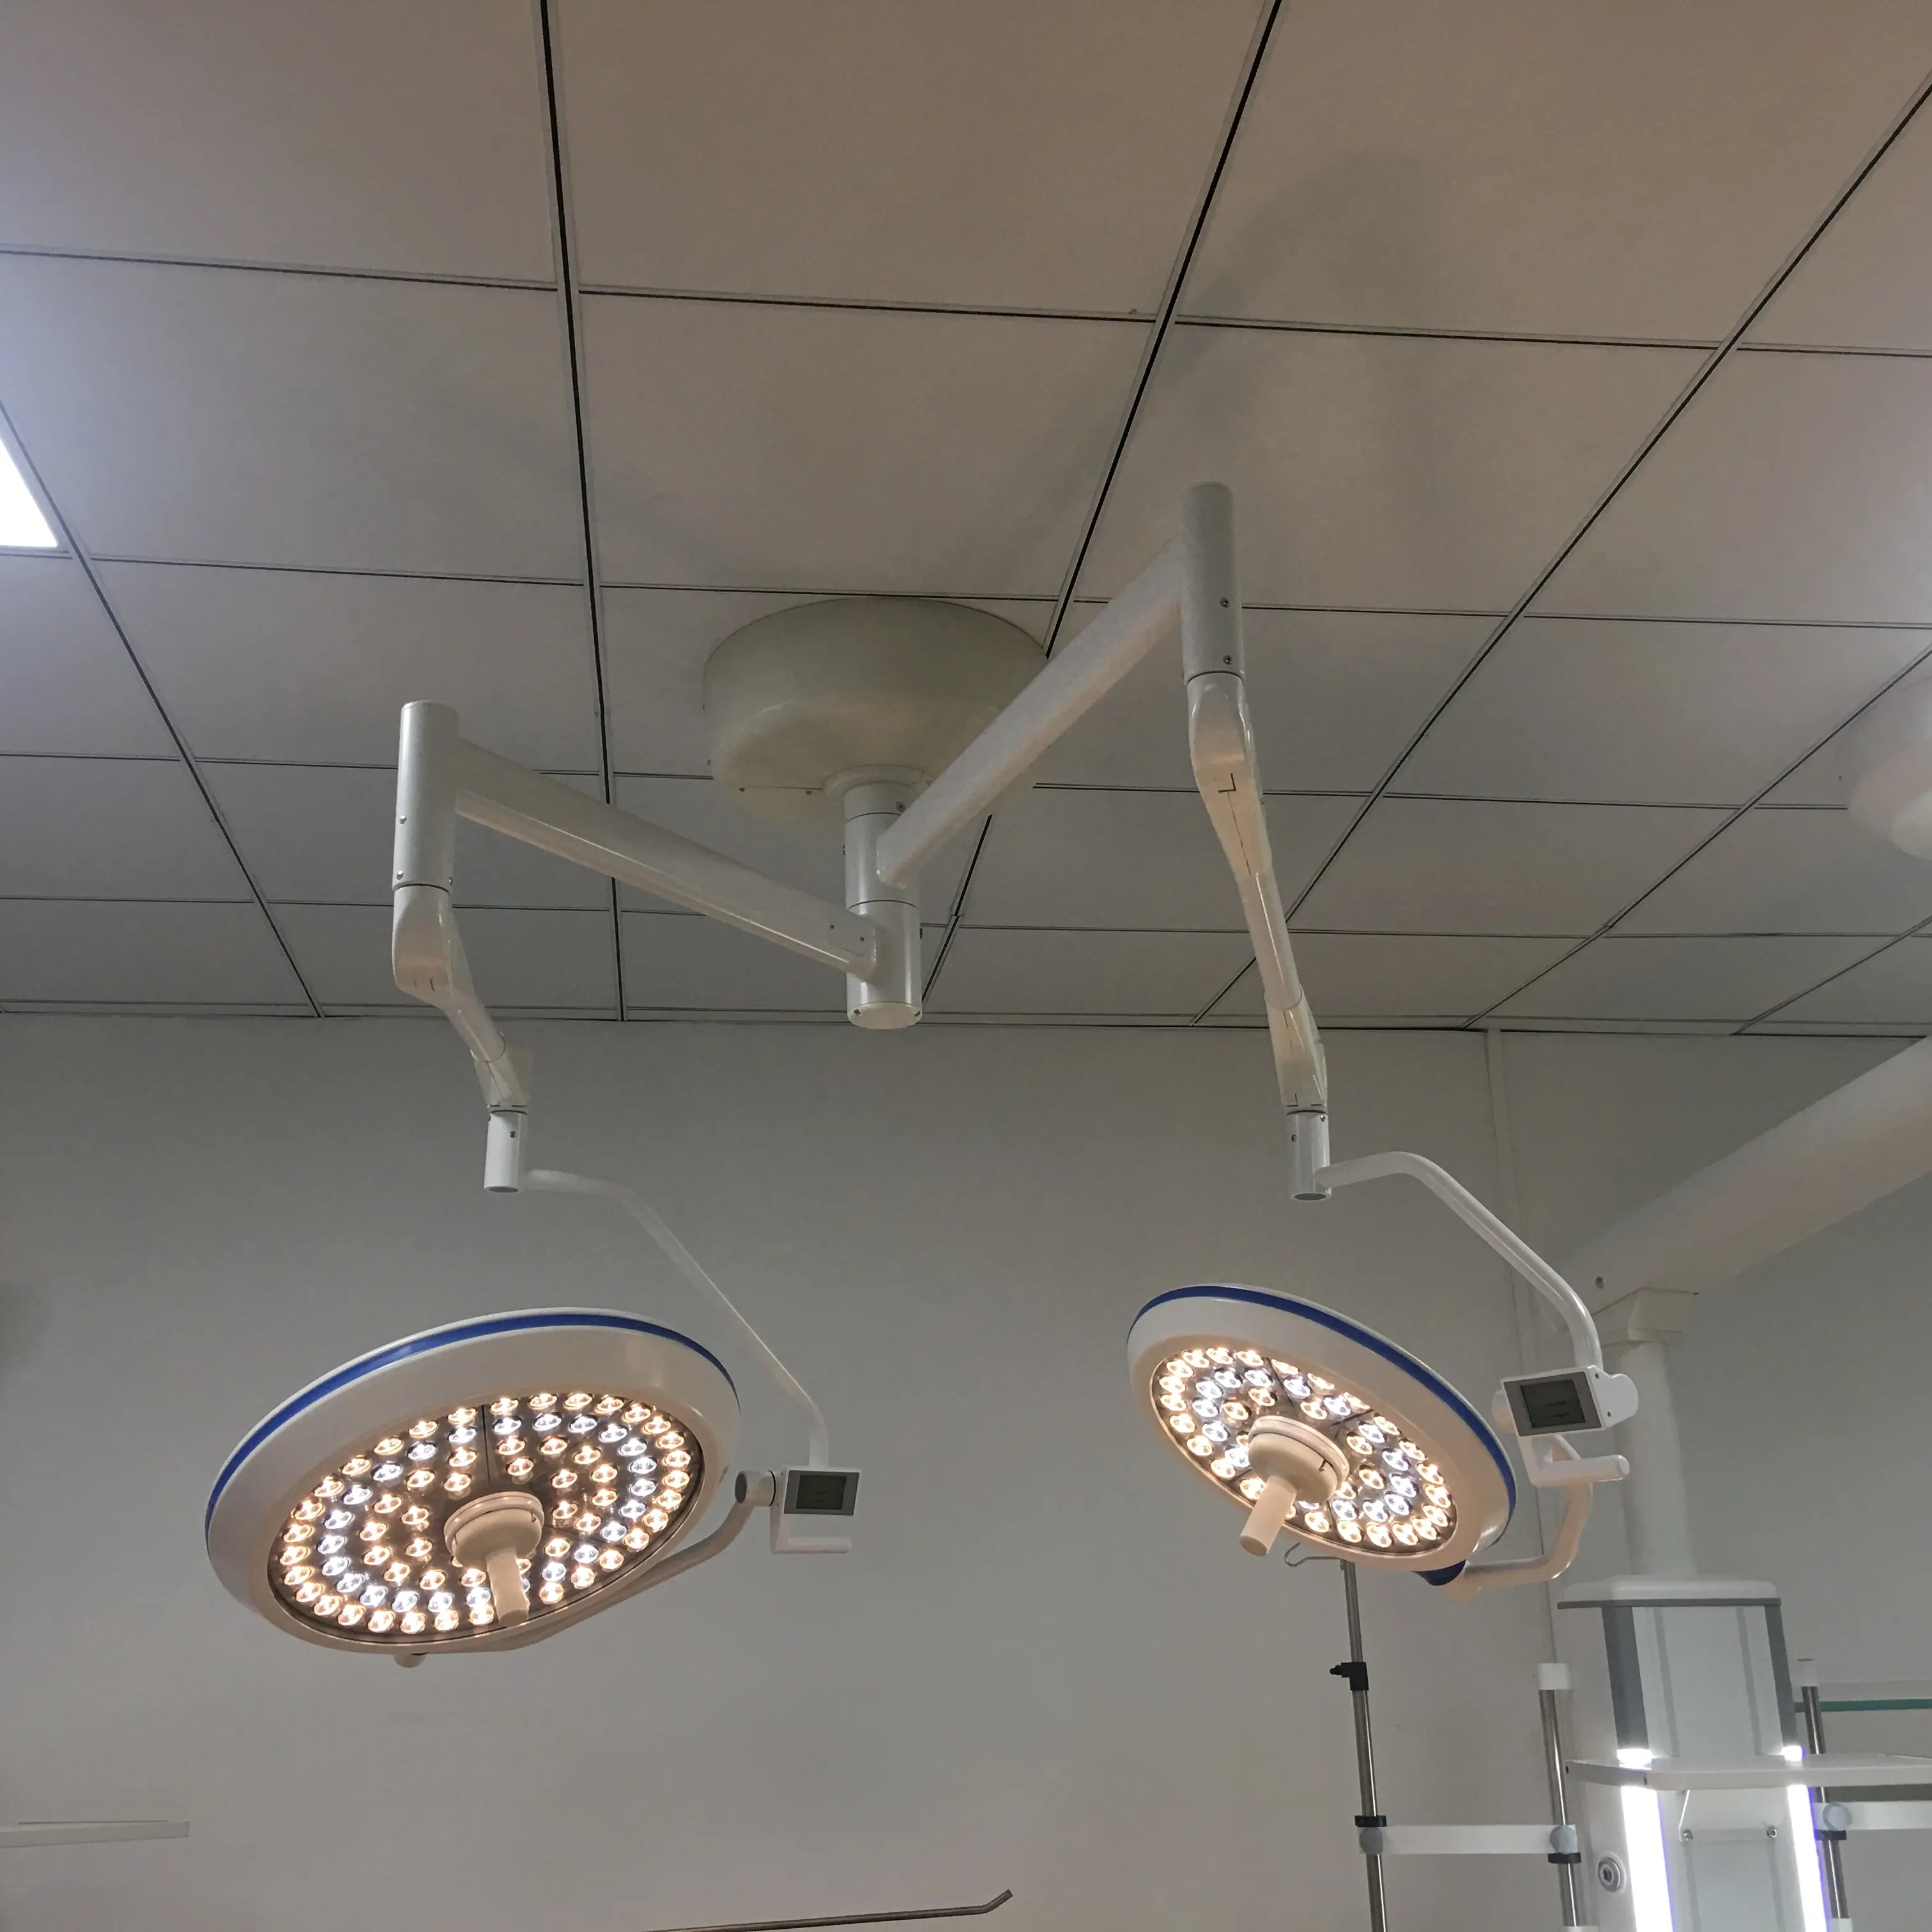 מחירים טיפול נמרץ רפואי מרפאת כירורגית תקרת סוללה בחינה Led הלוגן מנורת שיניים, OT פעולה צללים יצרן אור